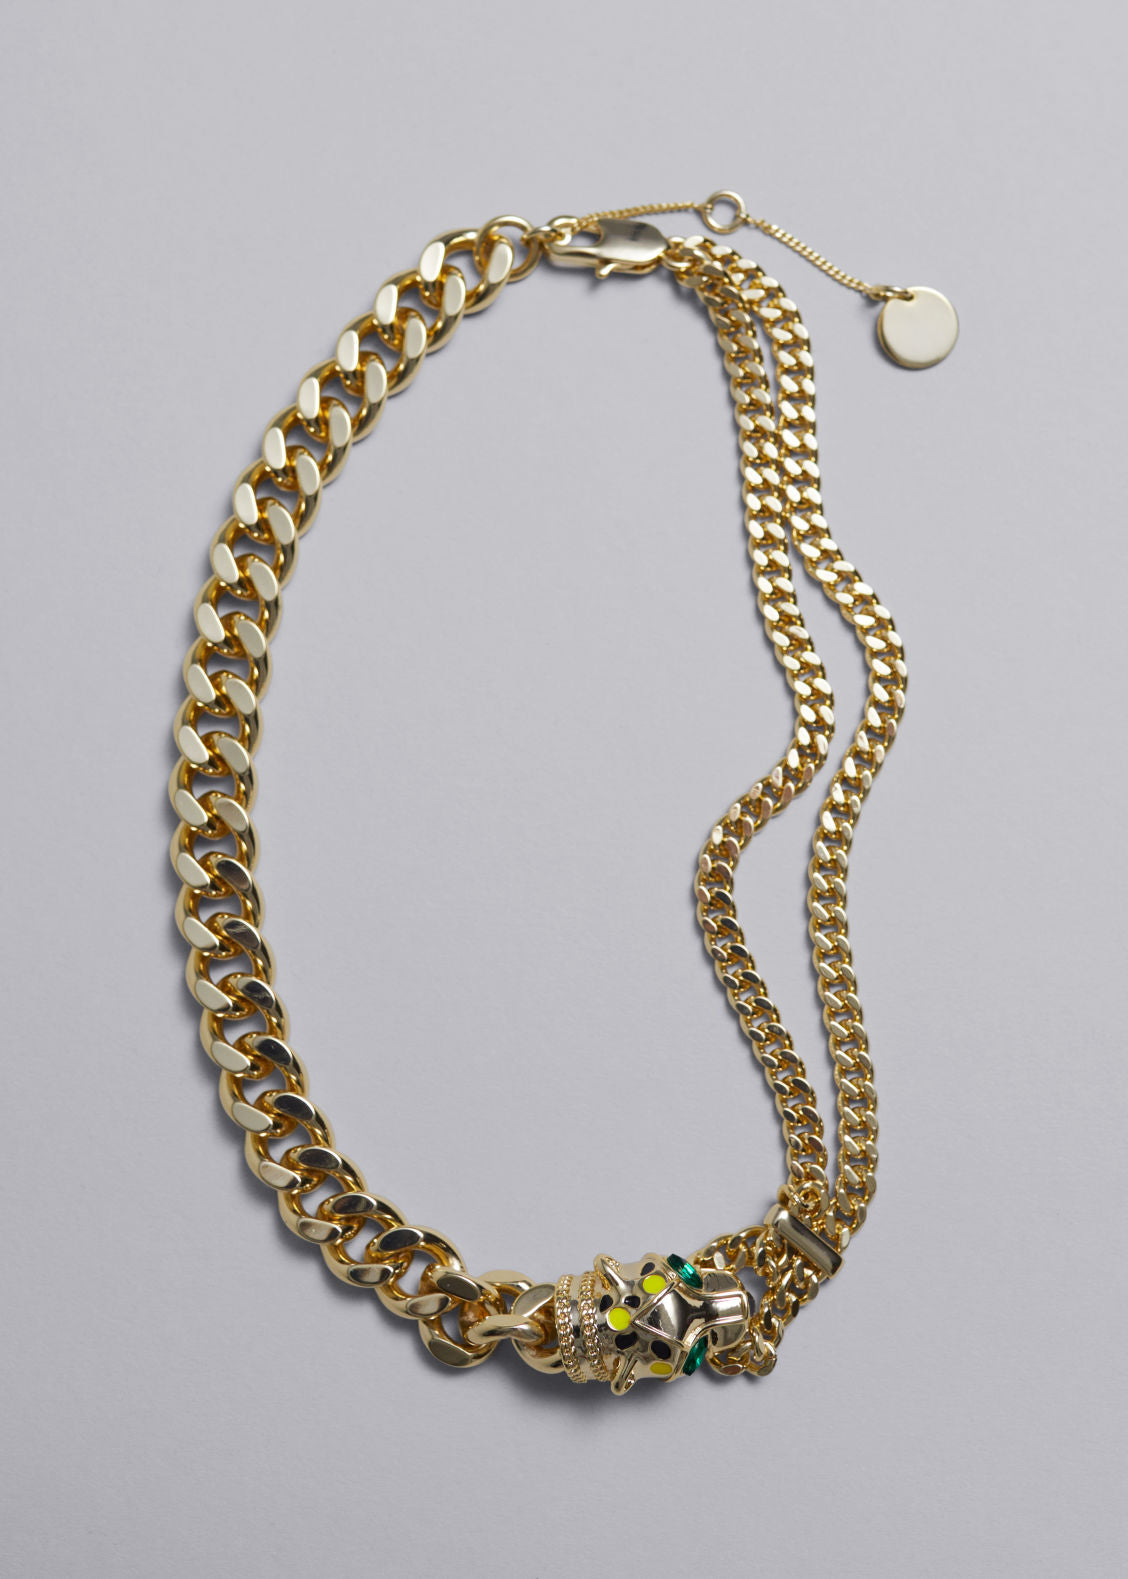 Jaguar chain necklace